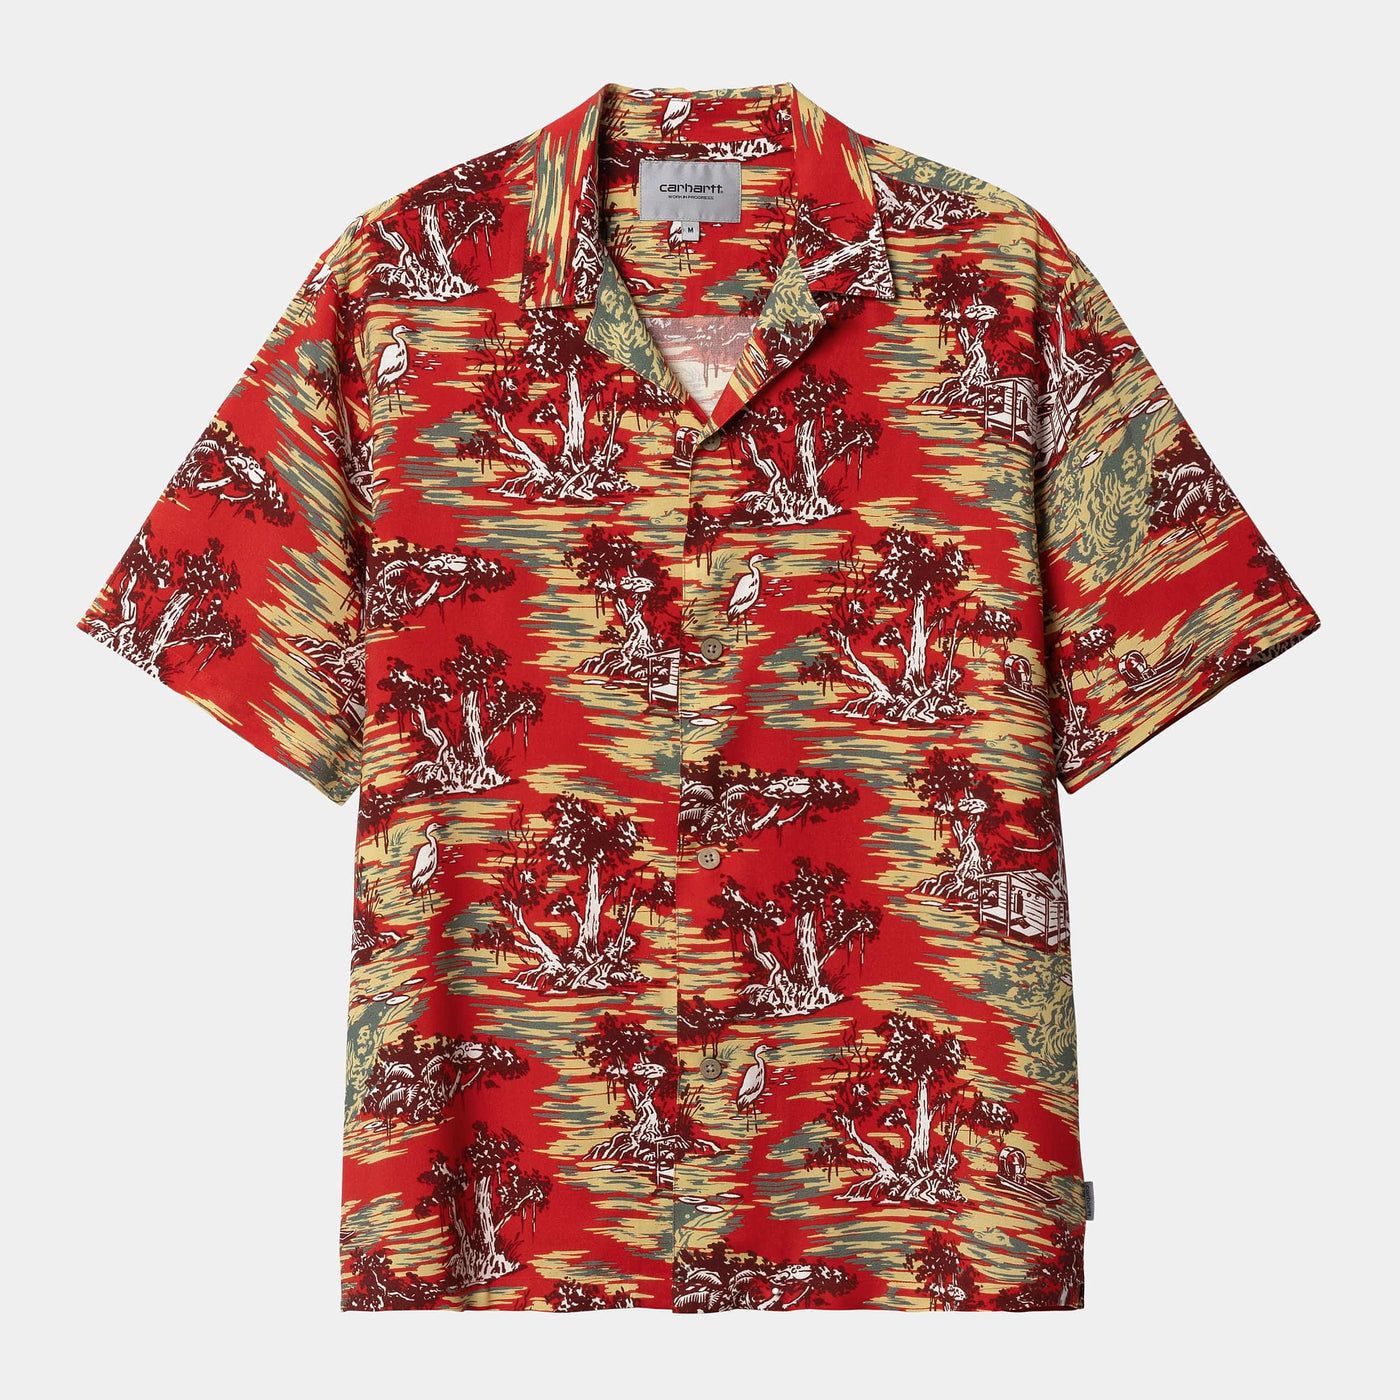 Carhartt Bayou Shirt